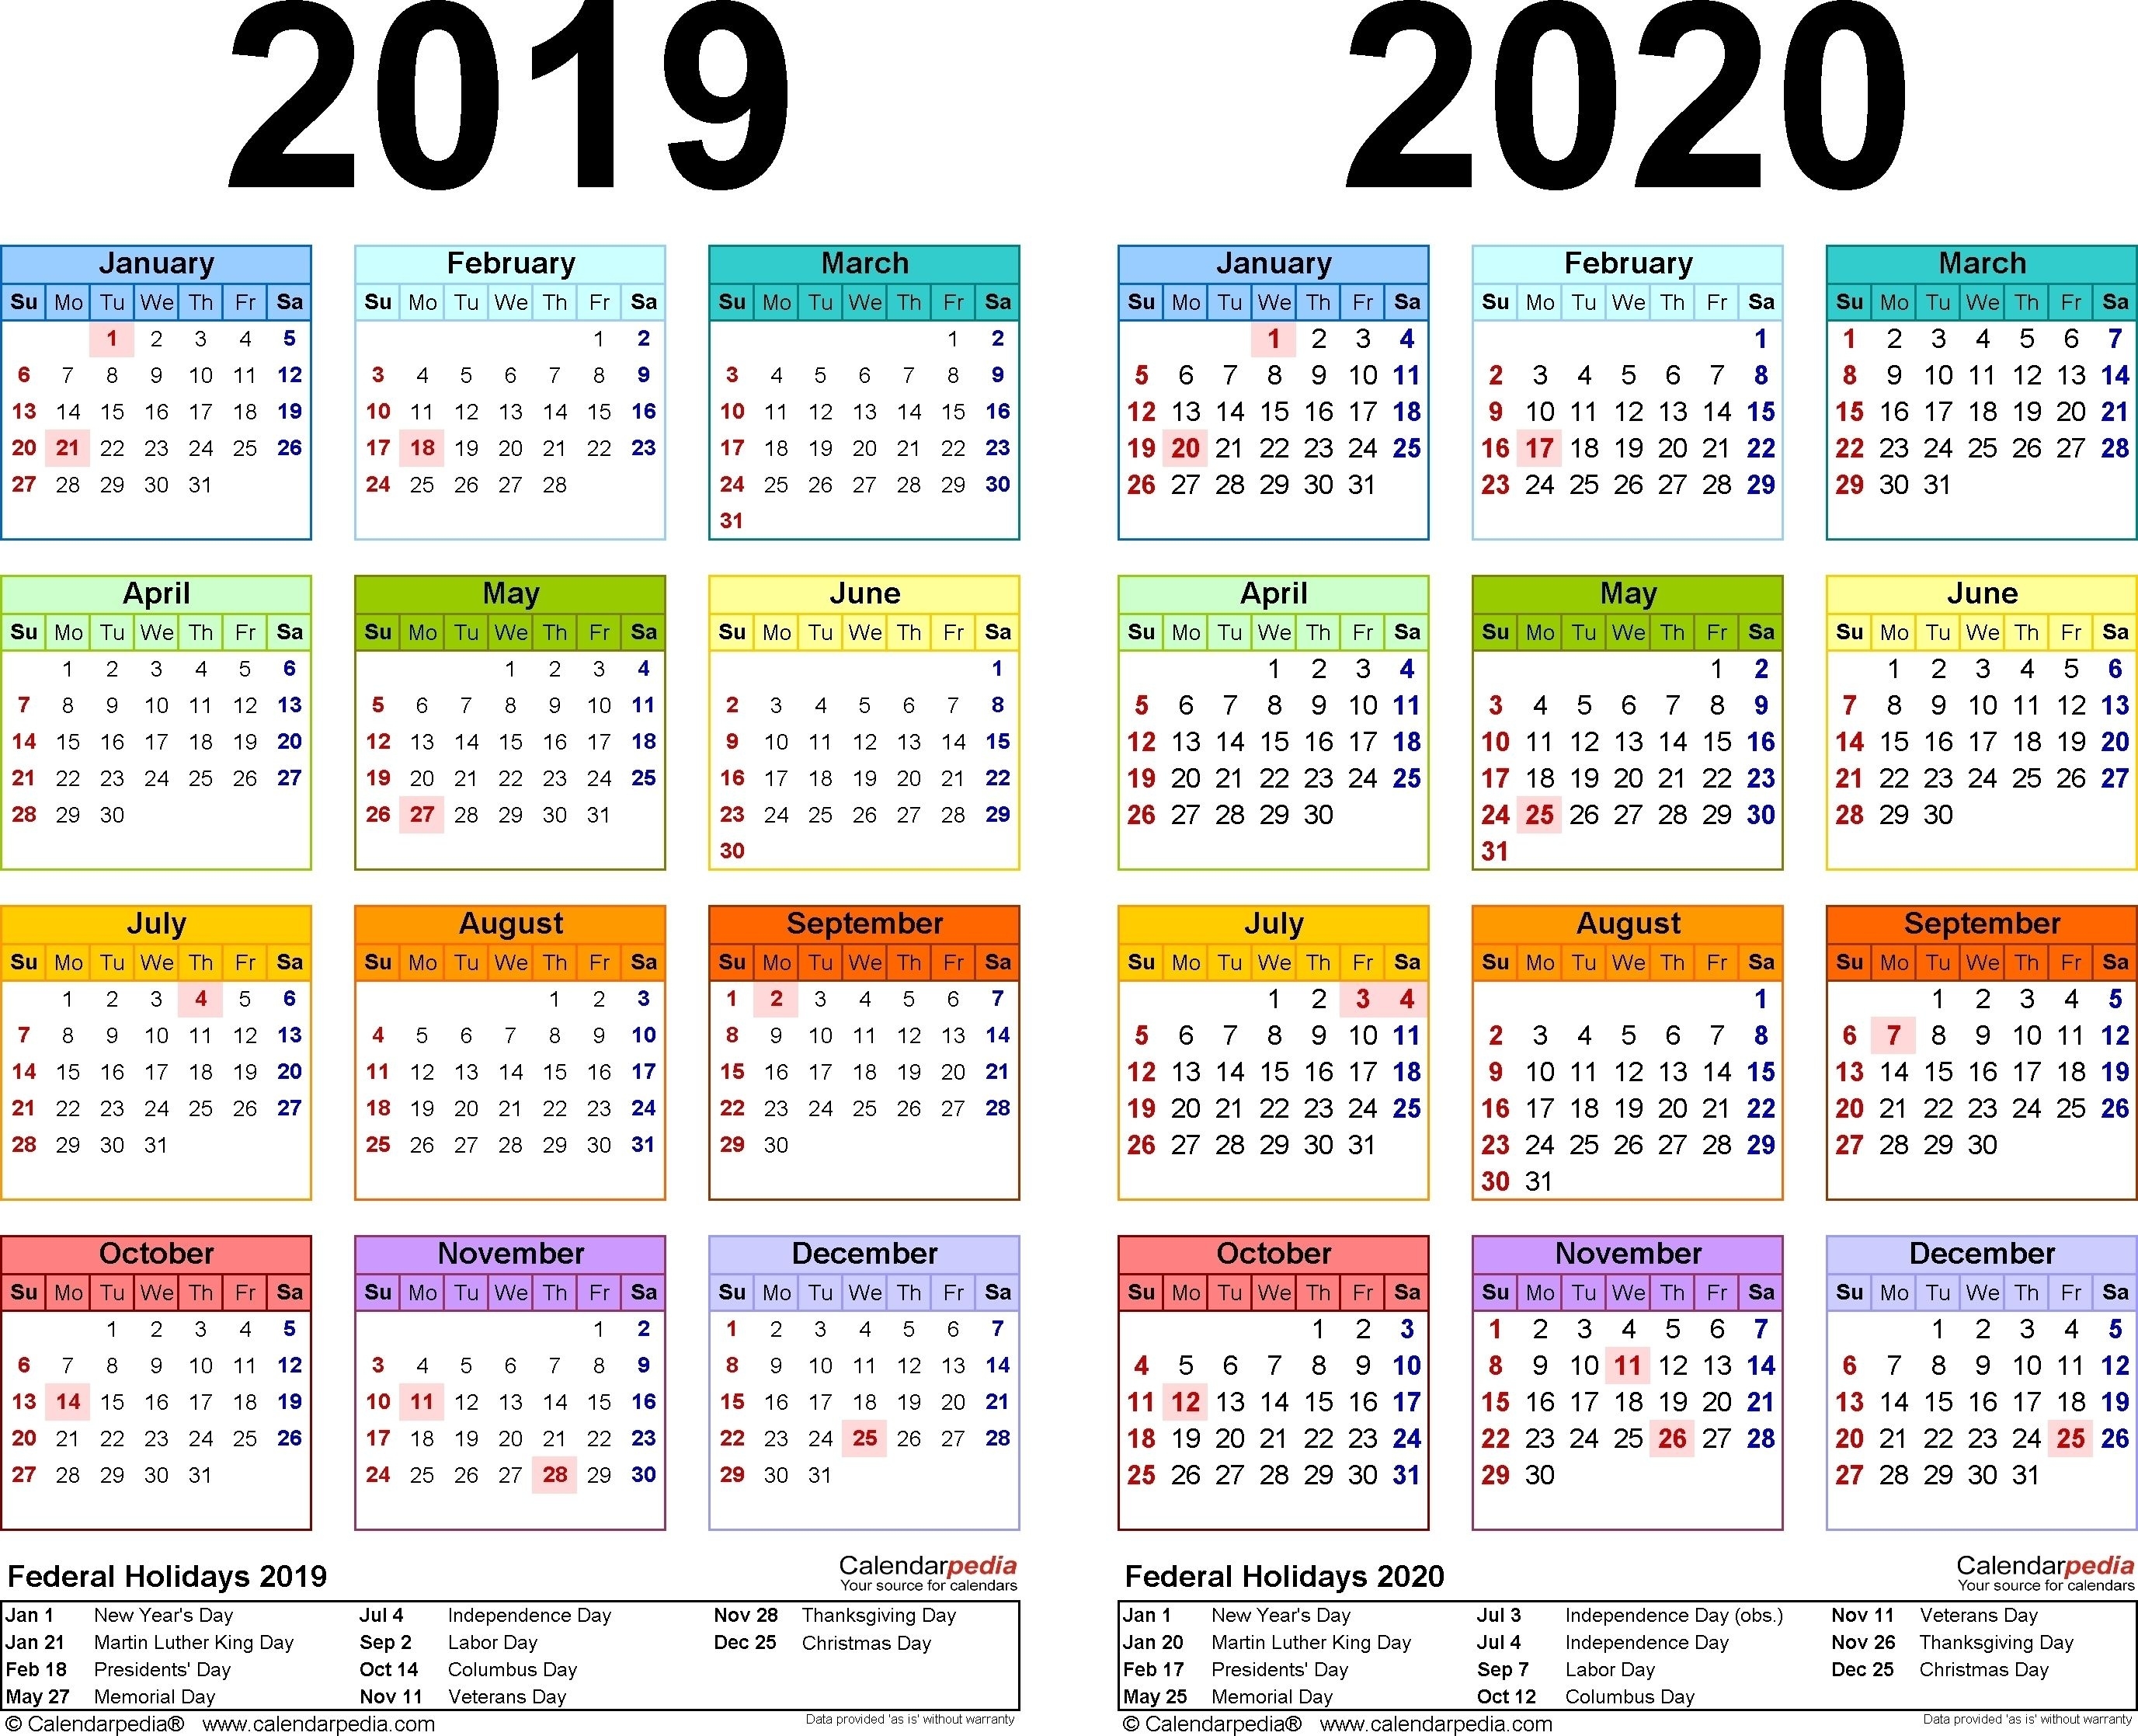 Extraordinary Hong Kong Public Holidays 2020 In 2020 Calendar 2021 December Hong Kong